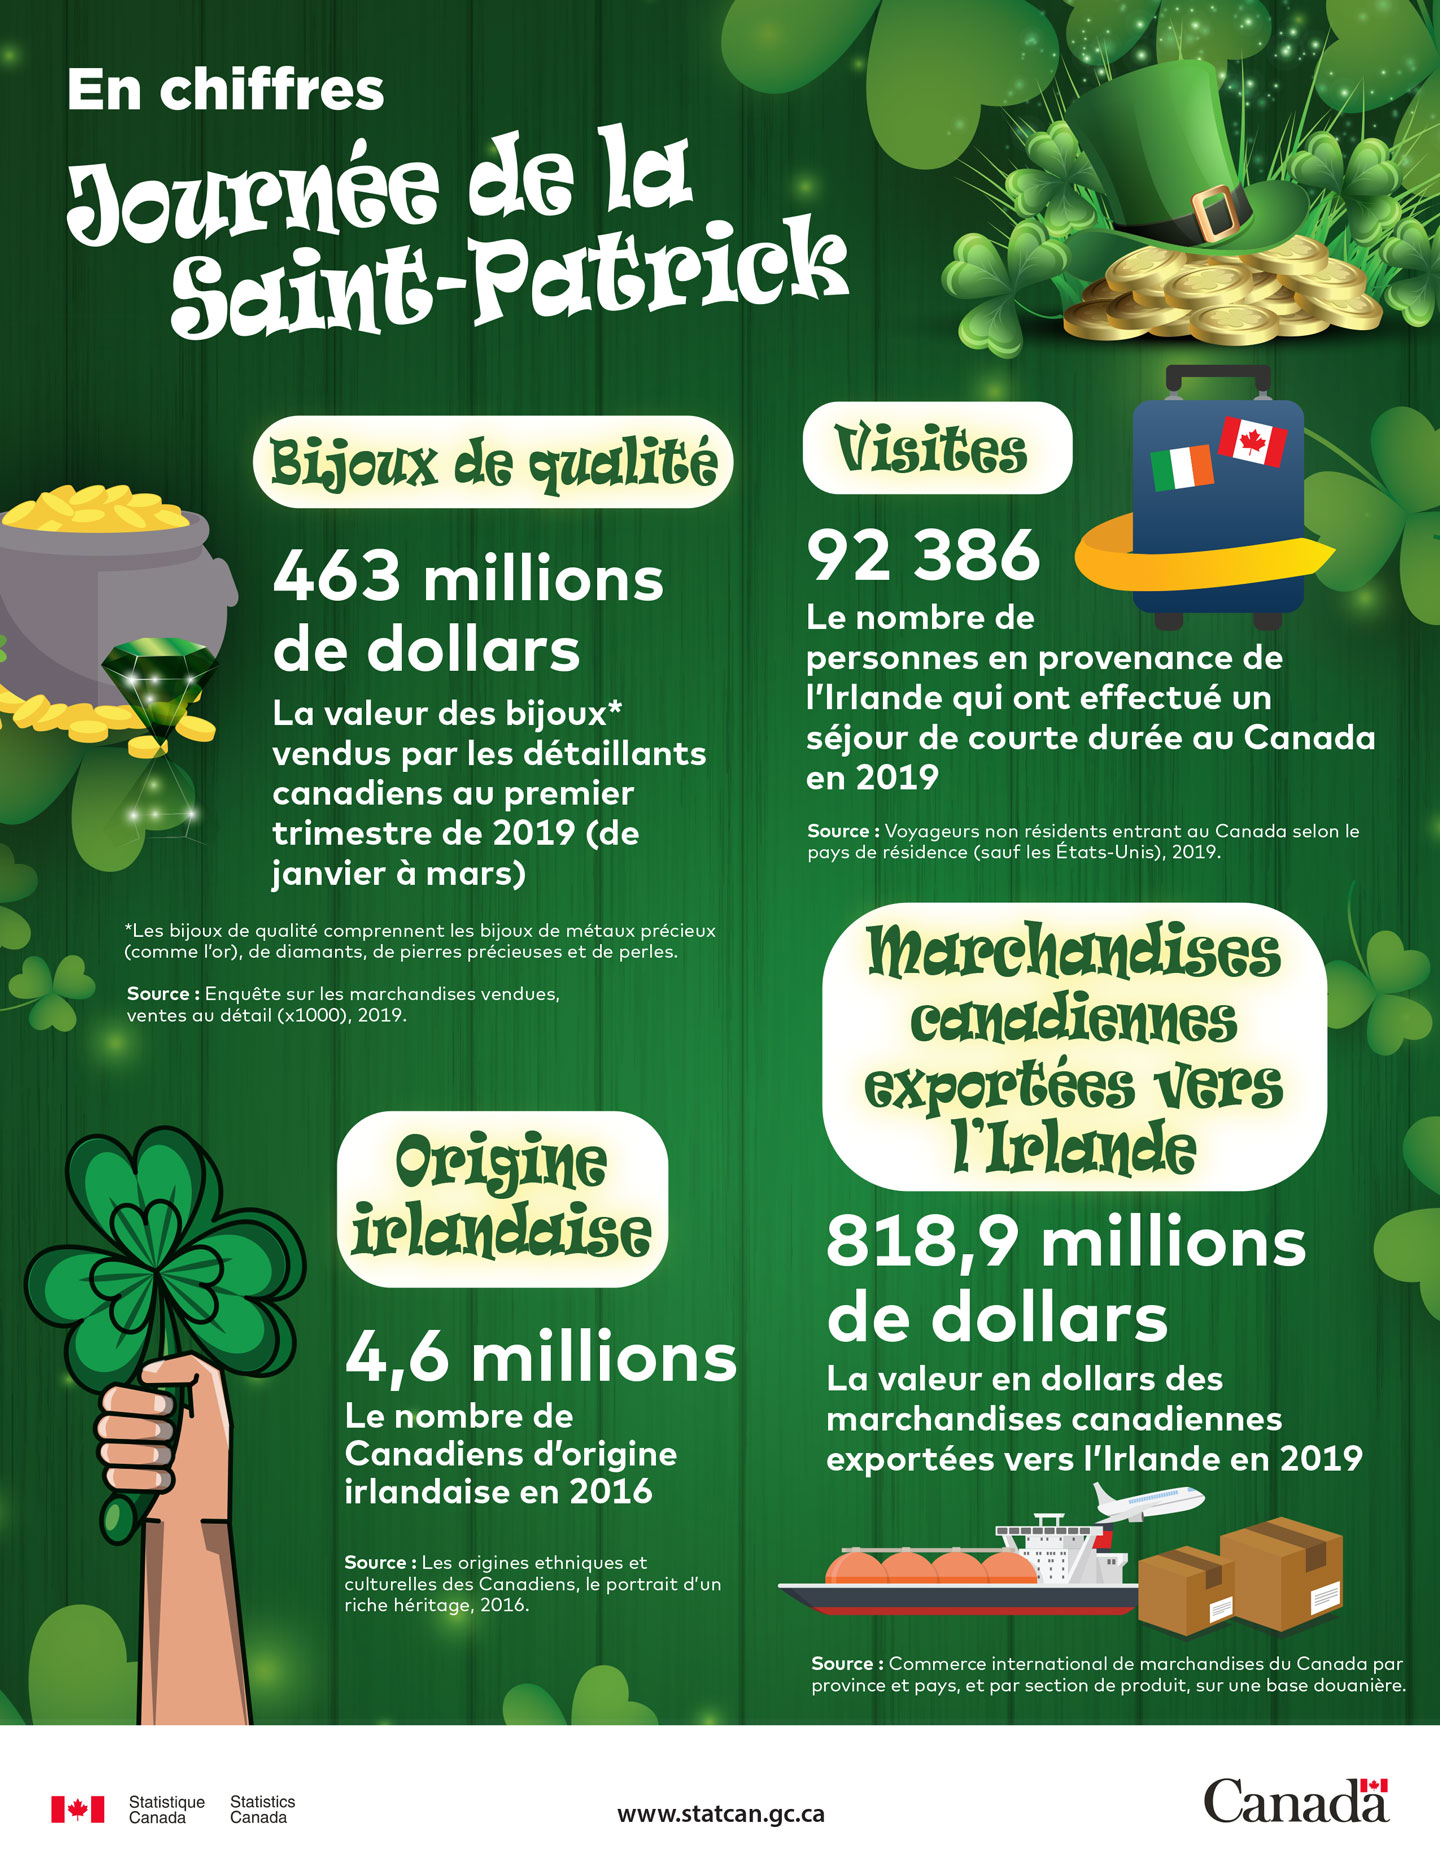 En chiffres - Journée de la Saint-Patrick 